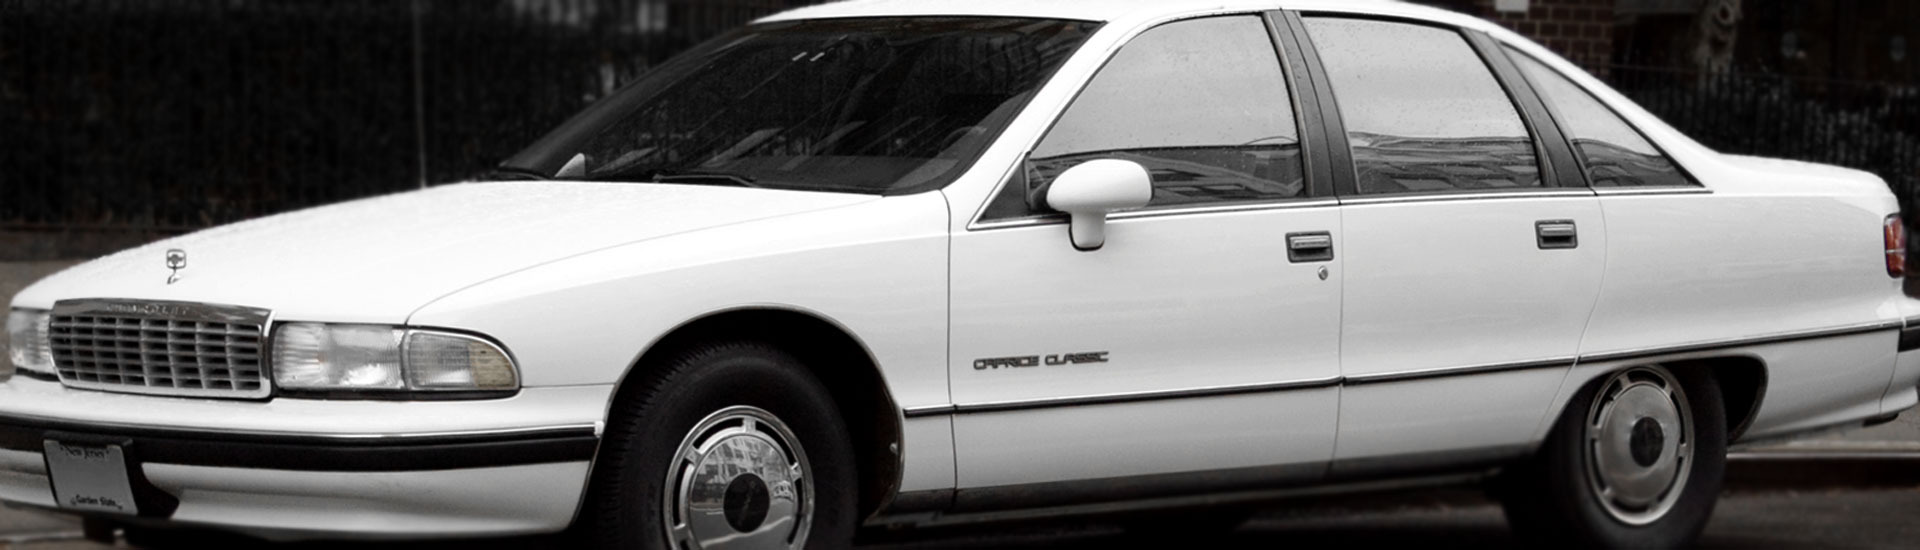 Chevrolet Caprice Window Tint